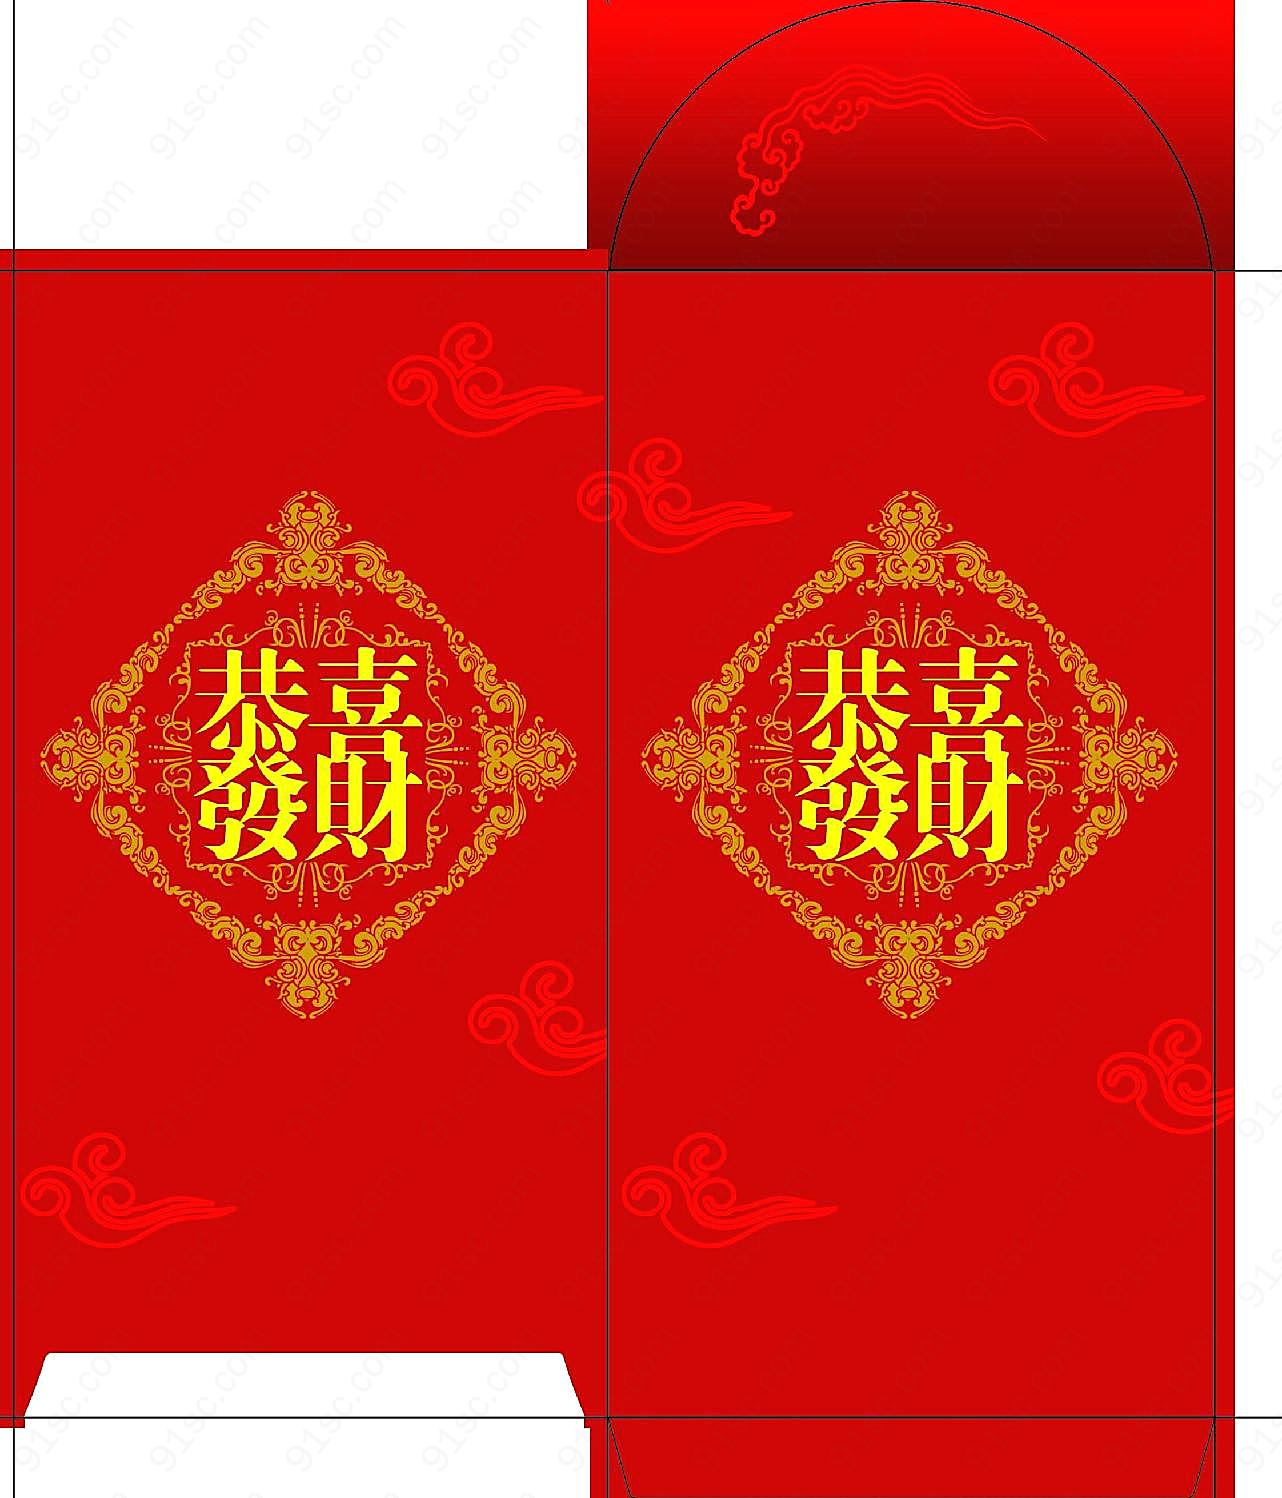 春节红包图片下载摄影